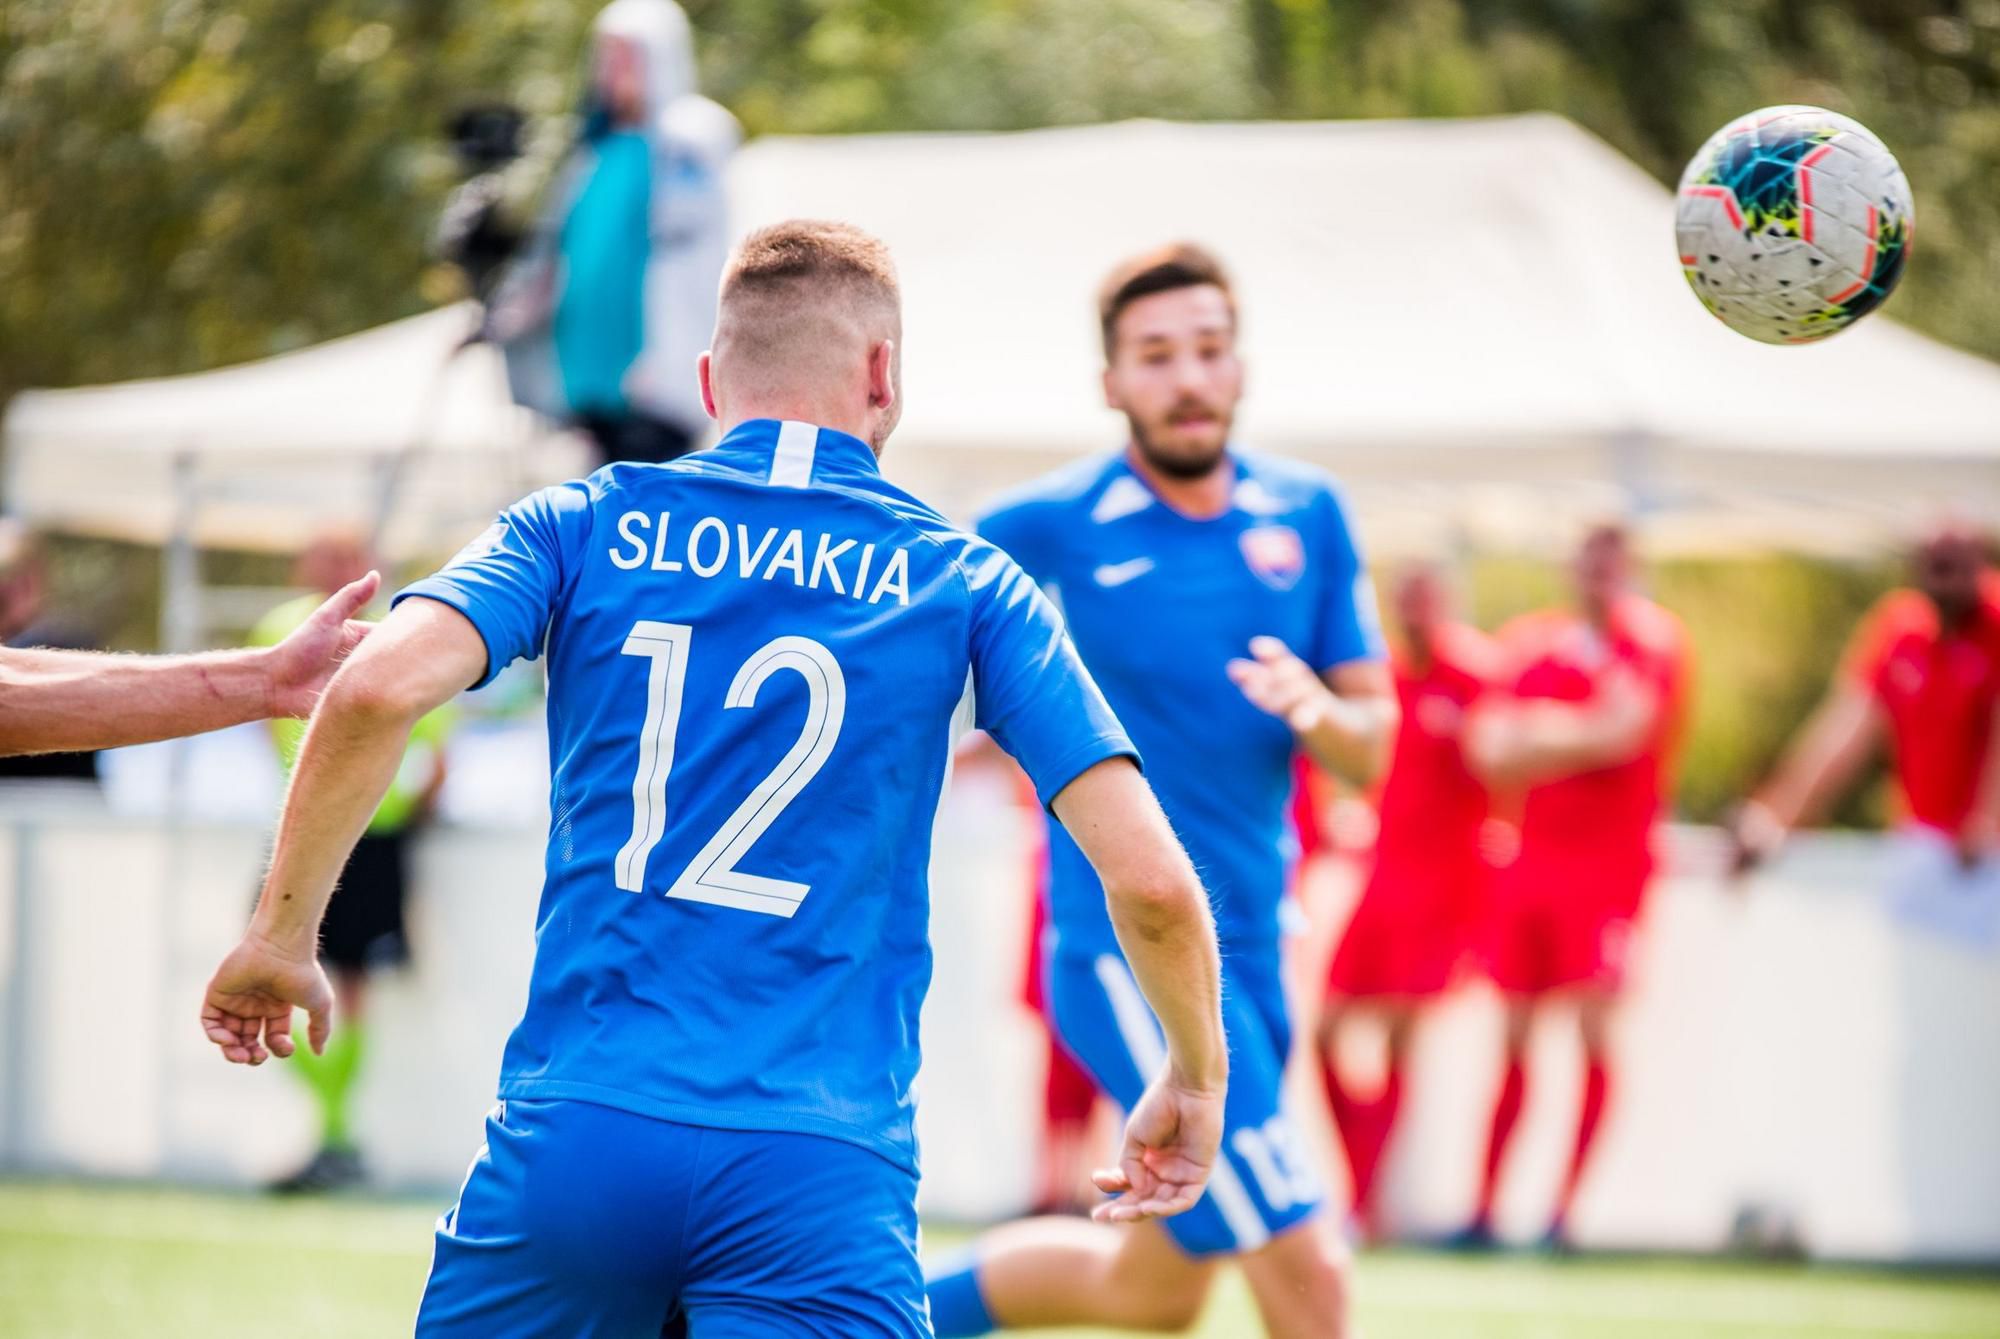 Malý futbal, reprezentácia Slovenska